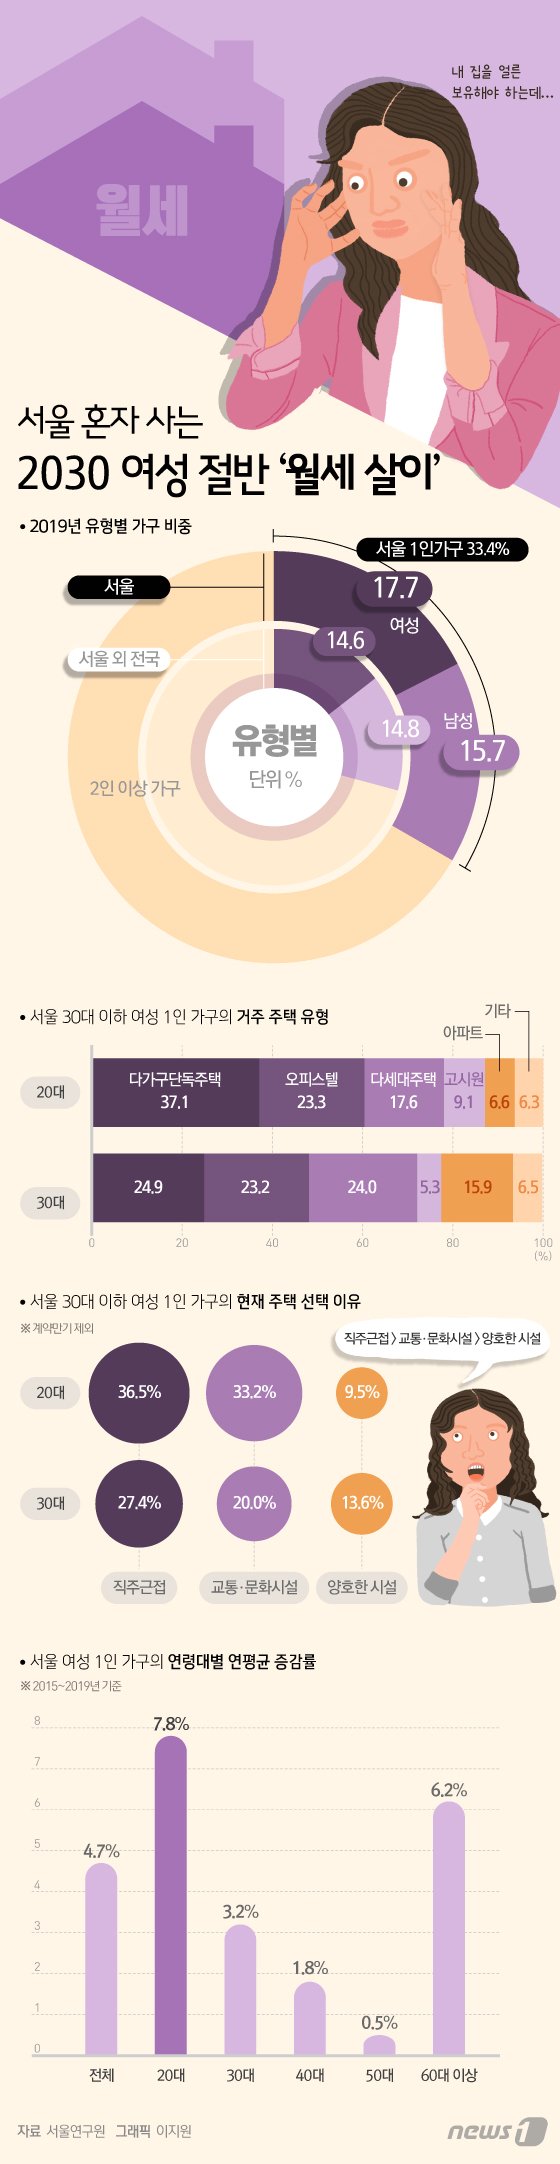 [그래픽뉴스] 서울 혼자 사는 2030 여성 절반 '월세 살이' 